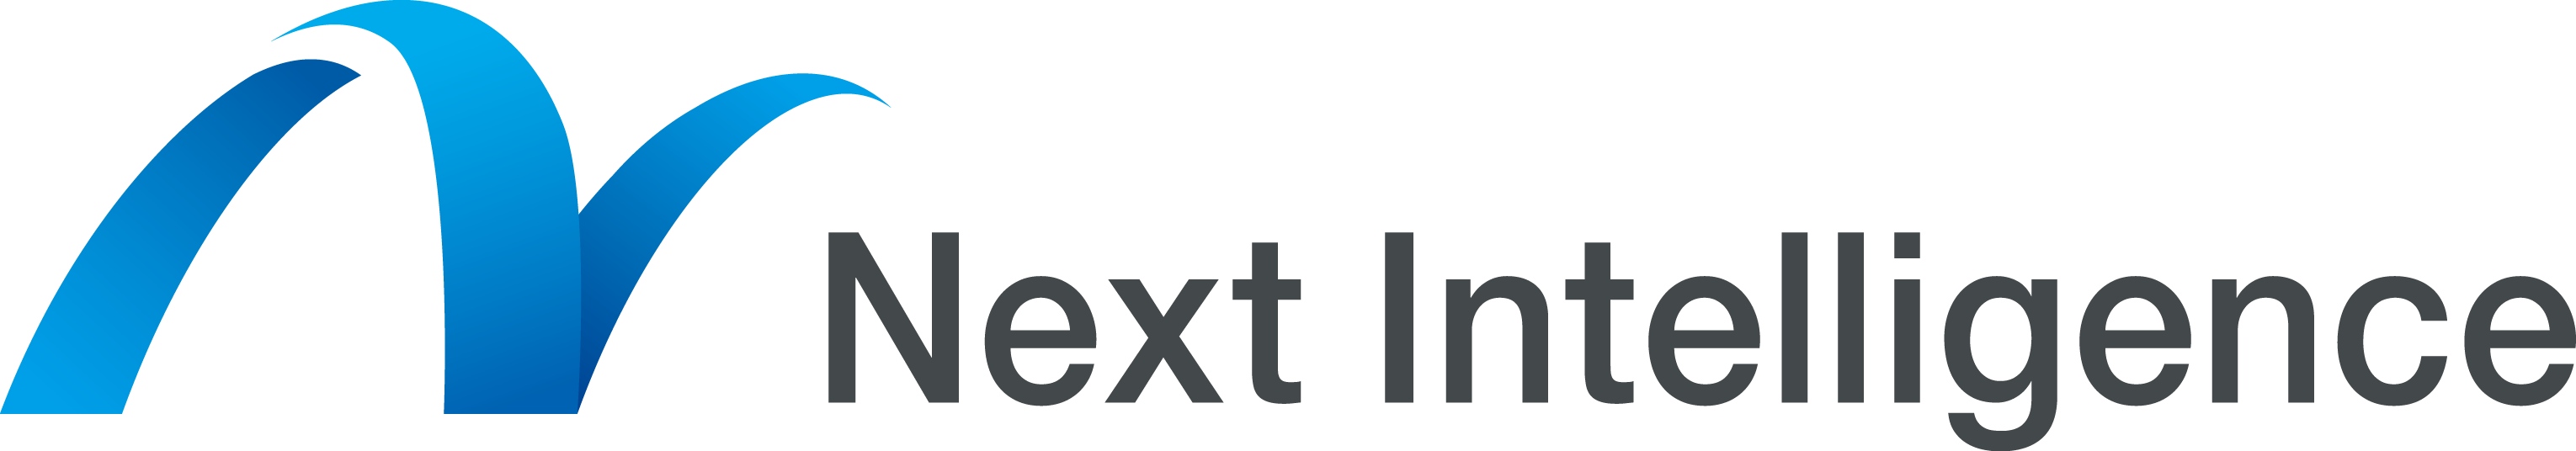 株式会社ネクストインテリジェンスの採用 求人情報 Engage